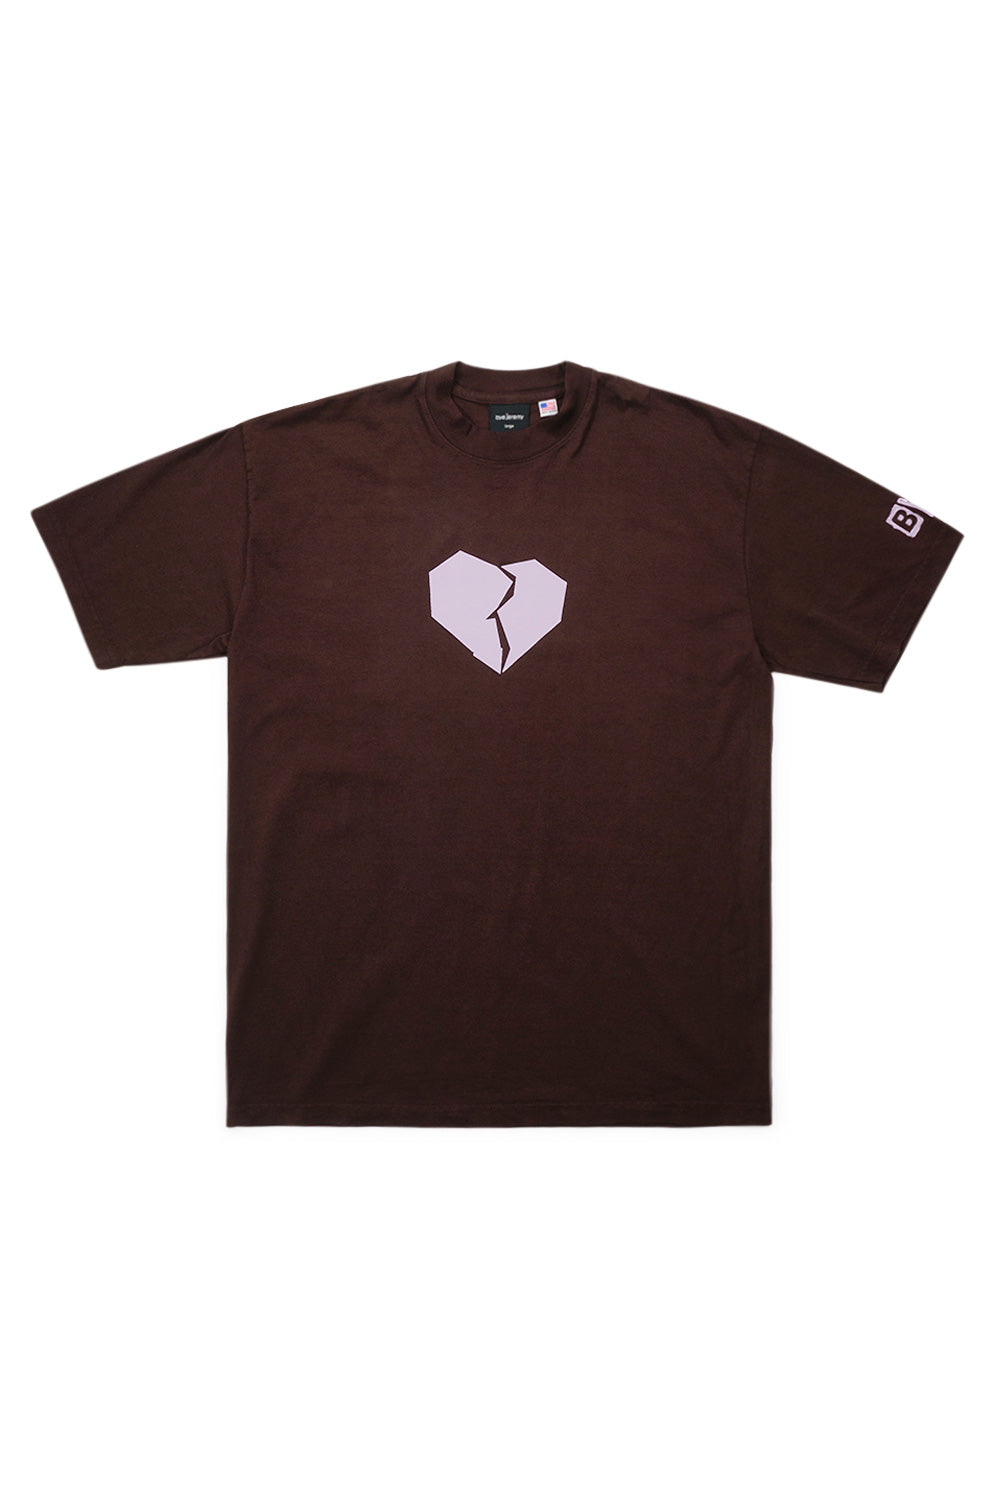 Bye Jeremy Heartbroken T-Shirt Brown - BONKERS